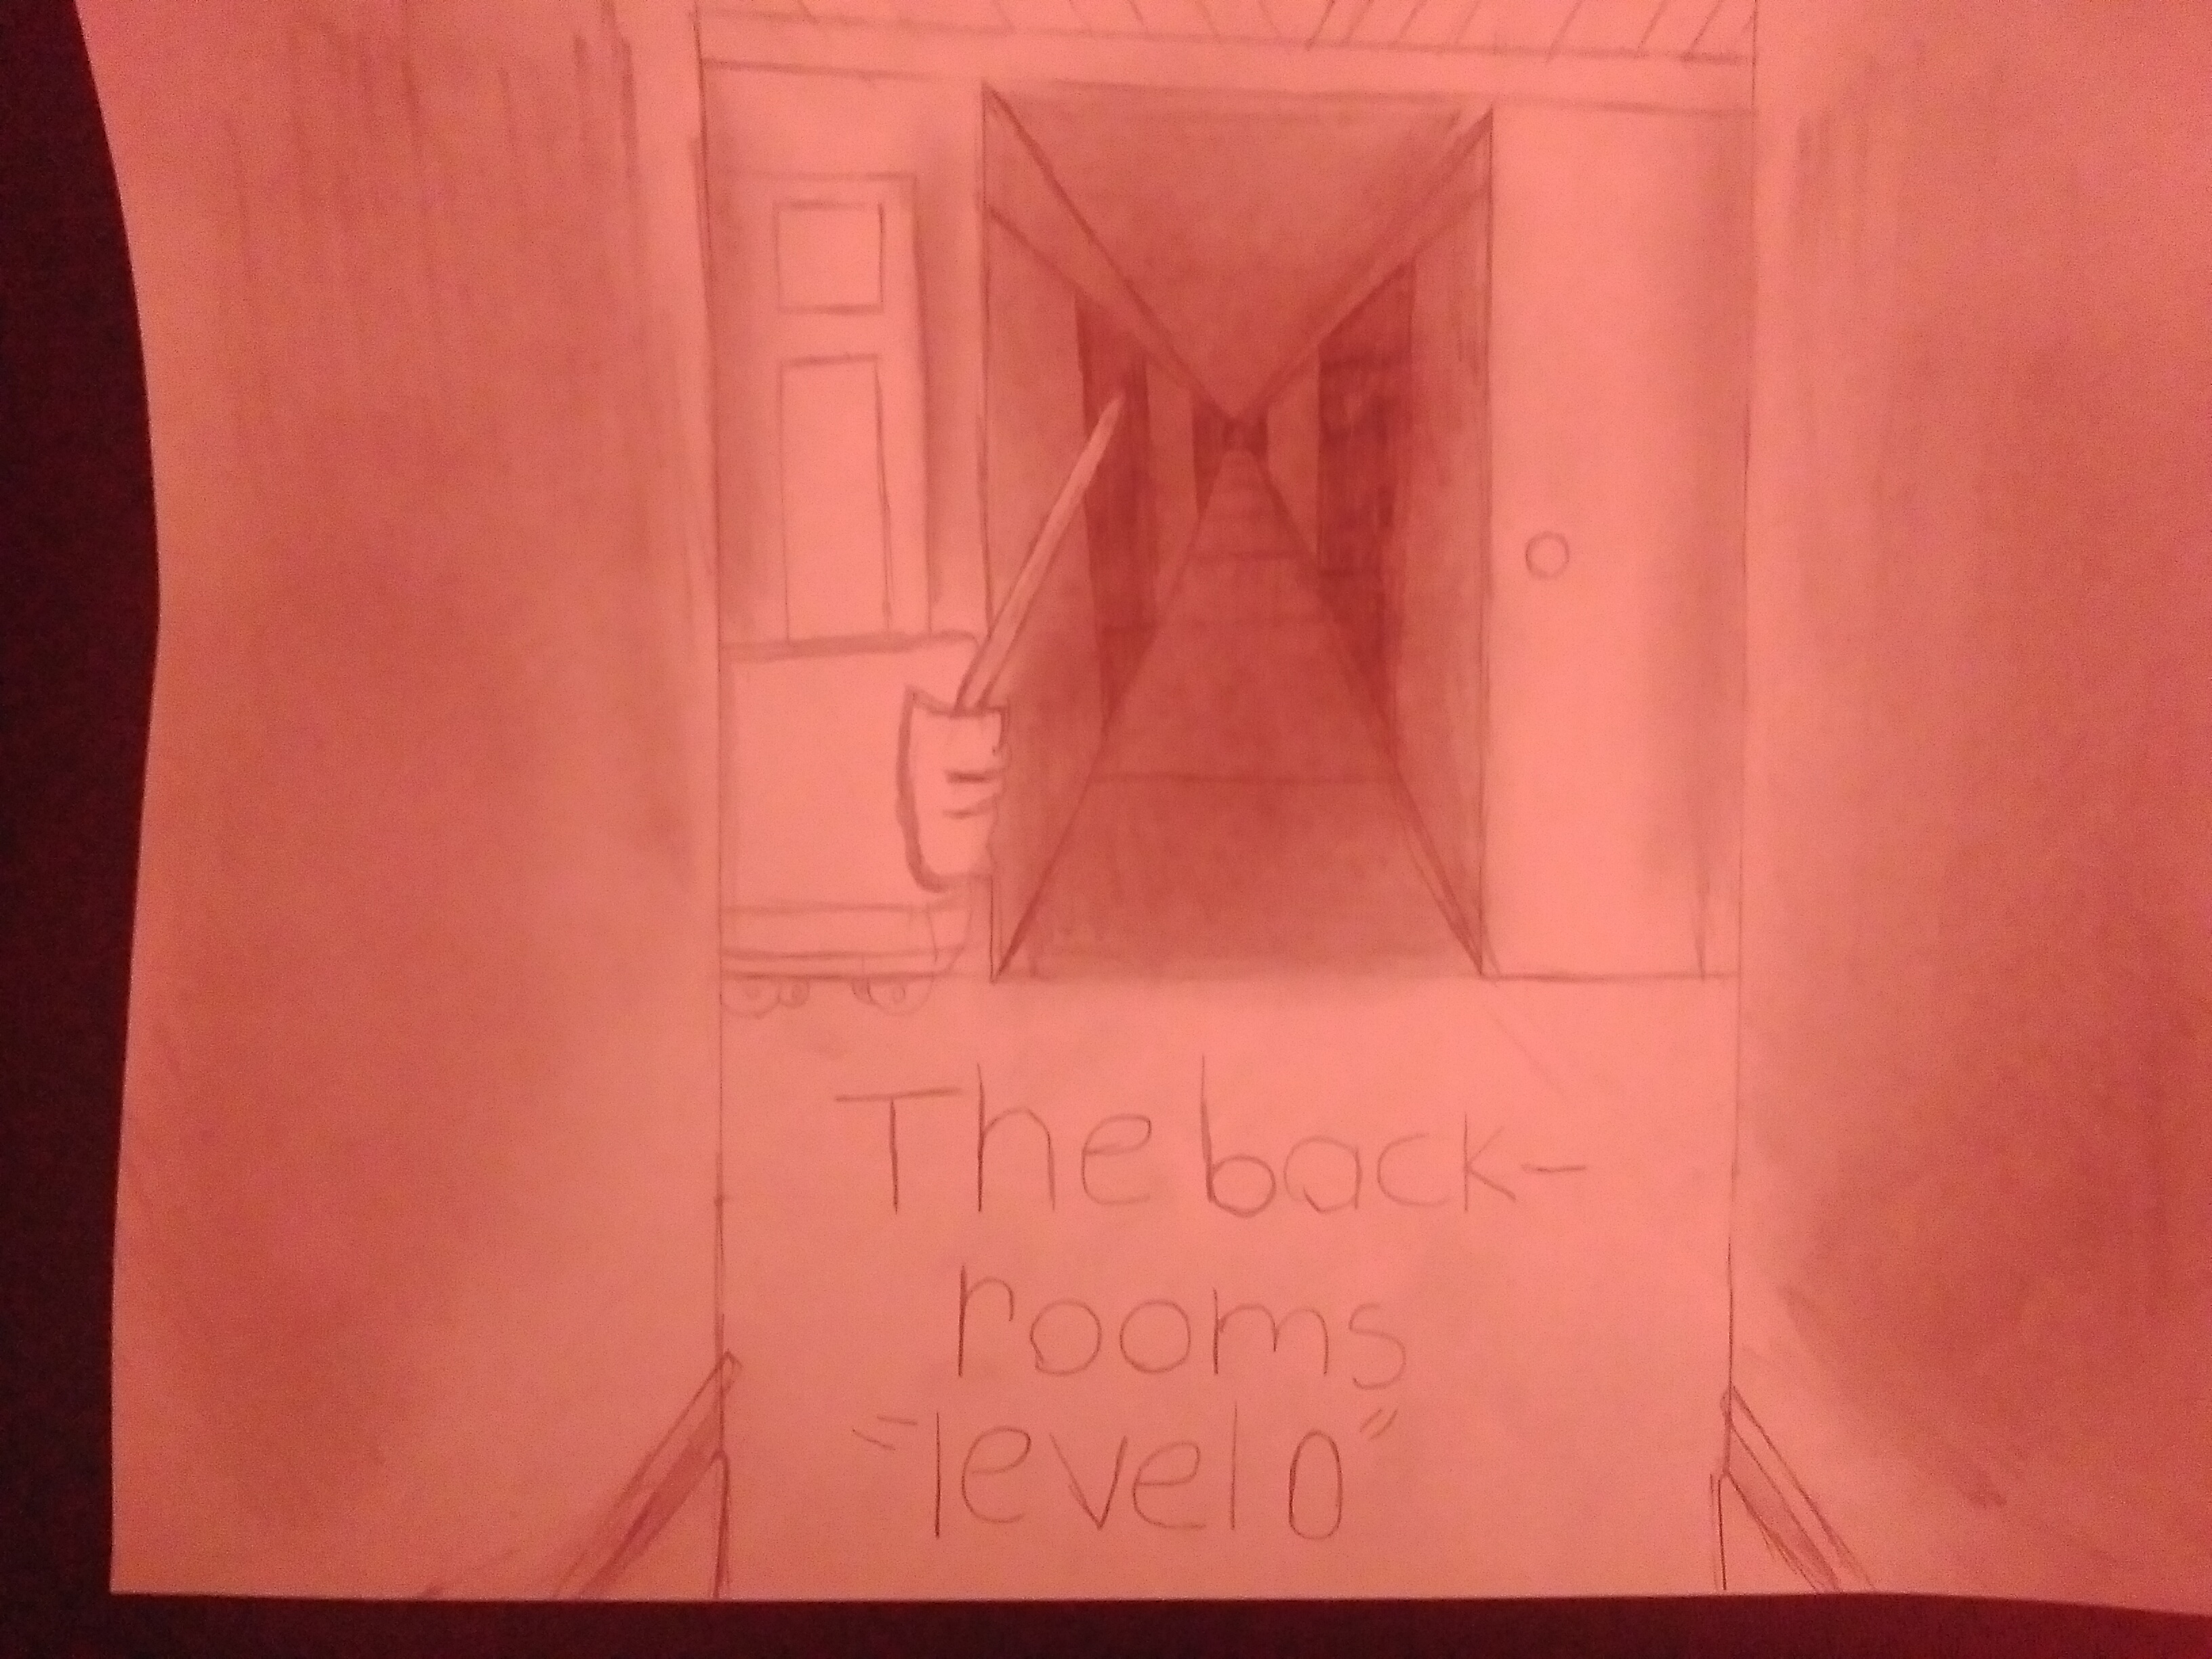 Backrooms-Level 0 by AliKatt0 on DeviantArt